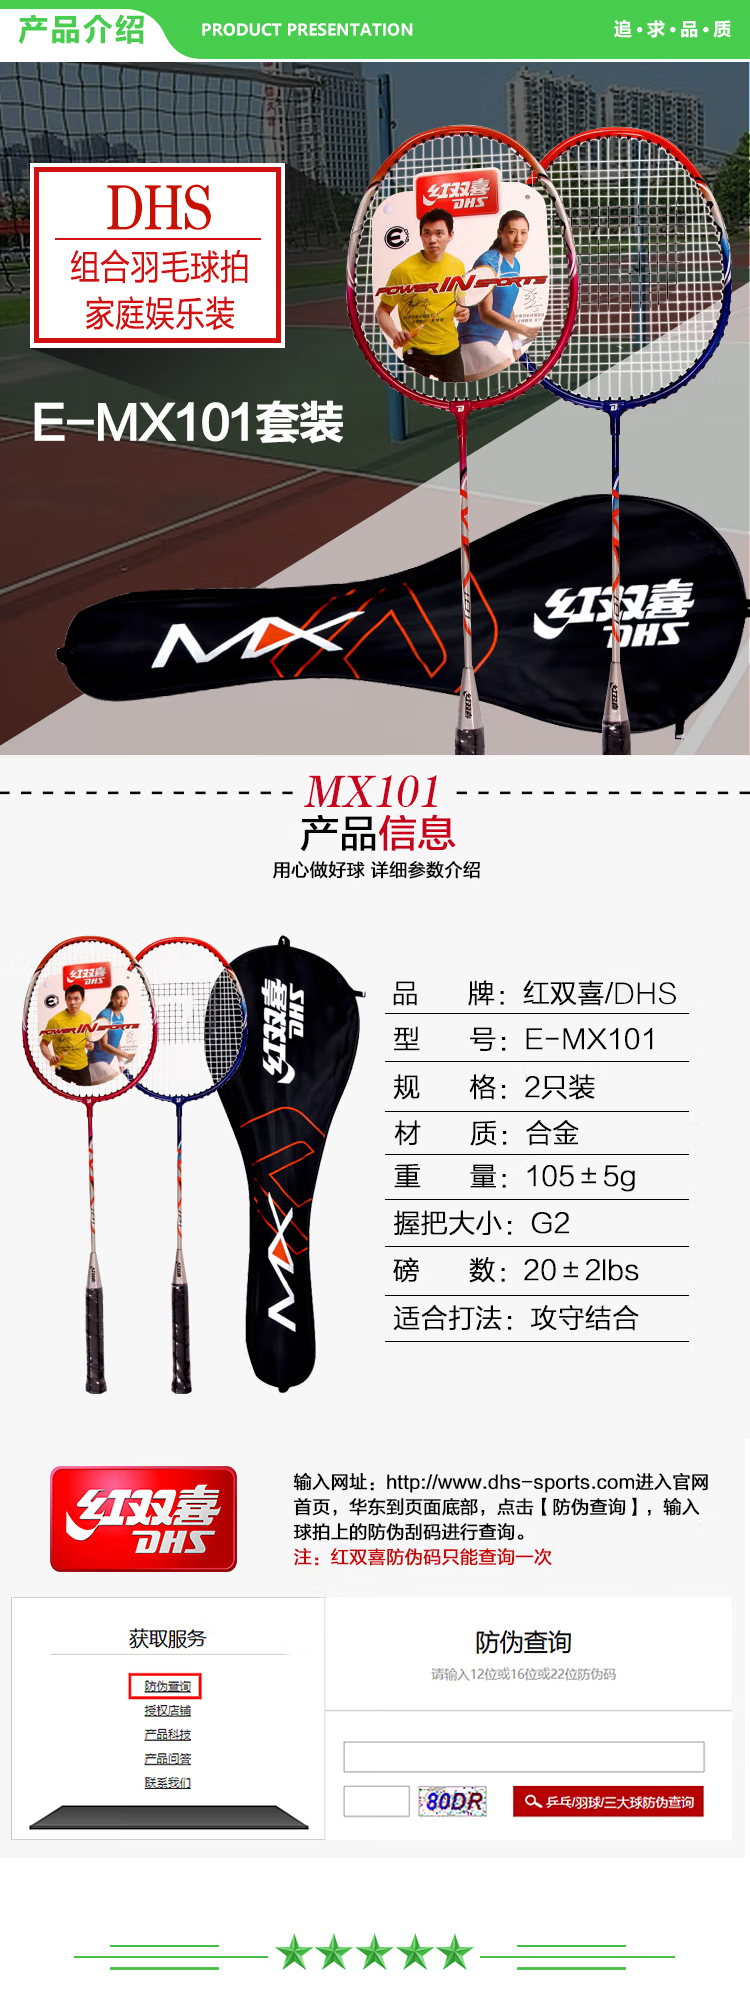 红双喜 DHS E-MX101 羽毛球拍对拍 已穿线  (2).jpg